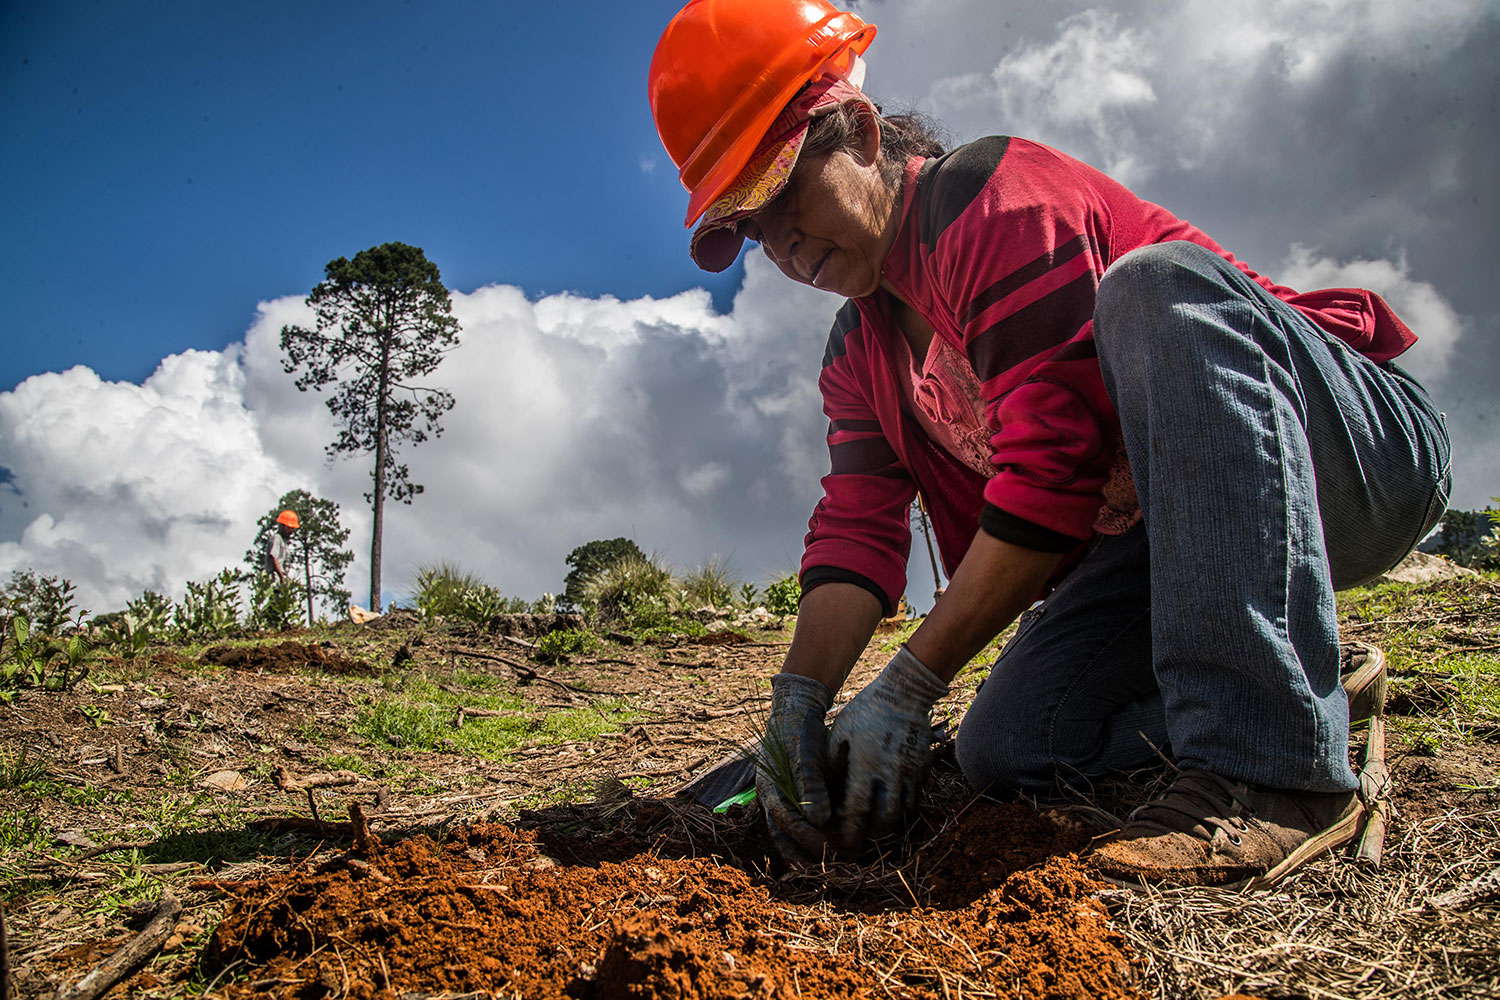 En Hidalgo y Veracruz los ejidos forestales van: diversificación productiva, ingresos adicionales y bienestar local, todo a partir del manejo comunitario de los bosques